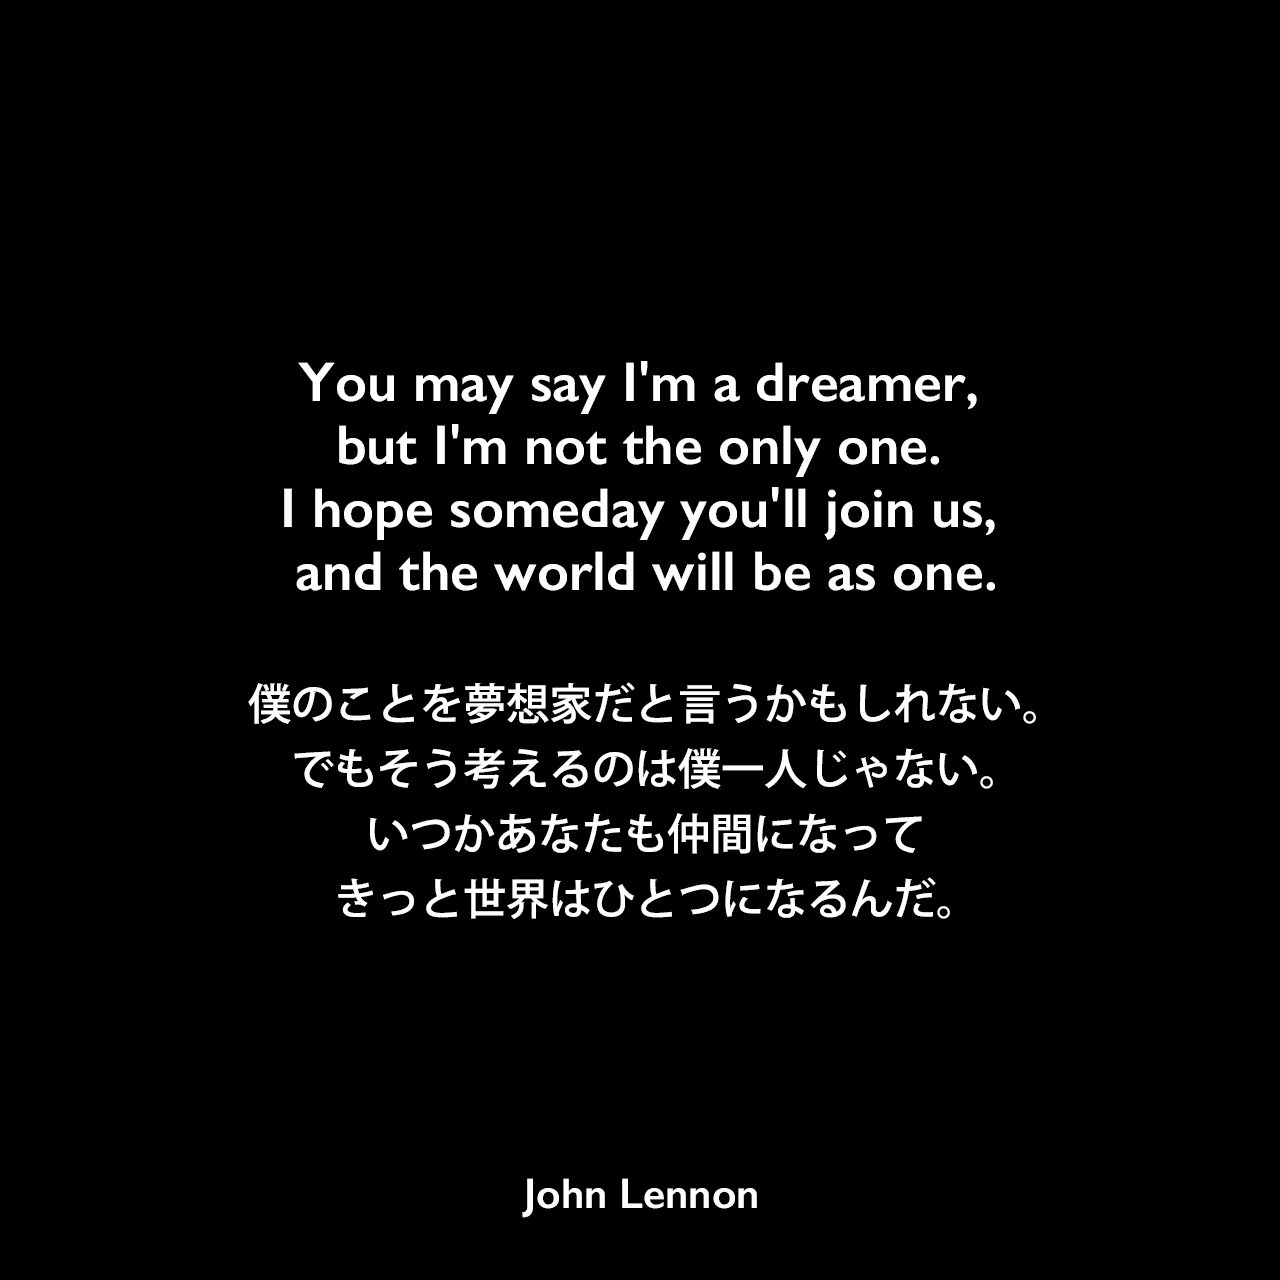 You may say I'm a dreamer, but I'm not the only one. I hope someday you'll join us, and the world will be as one.僕のことを夢想家だと言うかもしれない。でもそう考えるのは僕一人じゃない。いつかあなたも仲間になってきっと世界はひとつになるんだ。- ジョン・レノン作詞・作曲の「Imagine」よりJohn Lennon